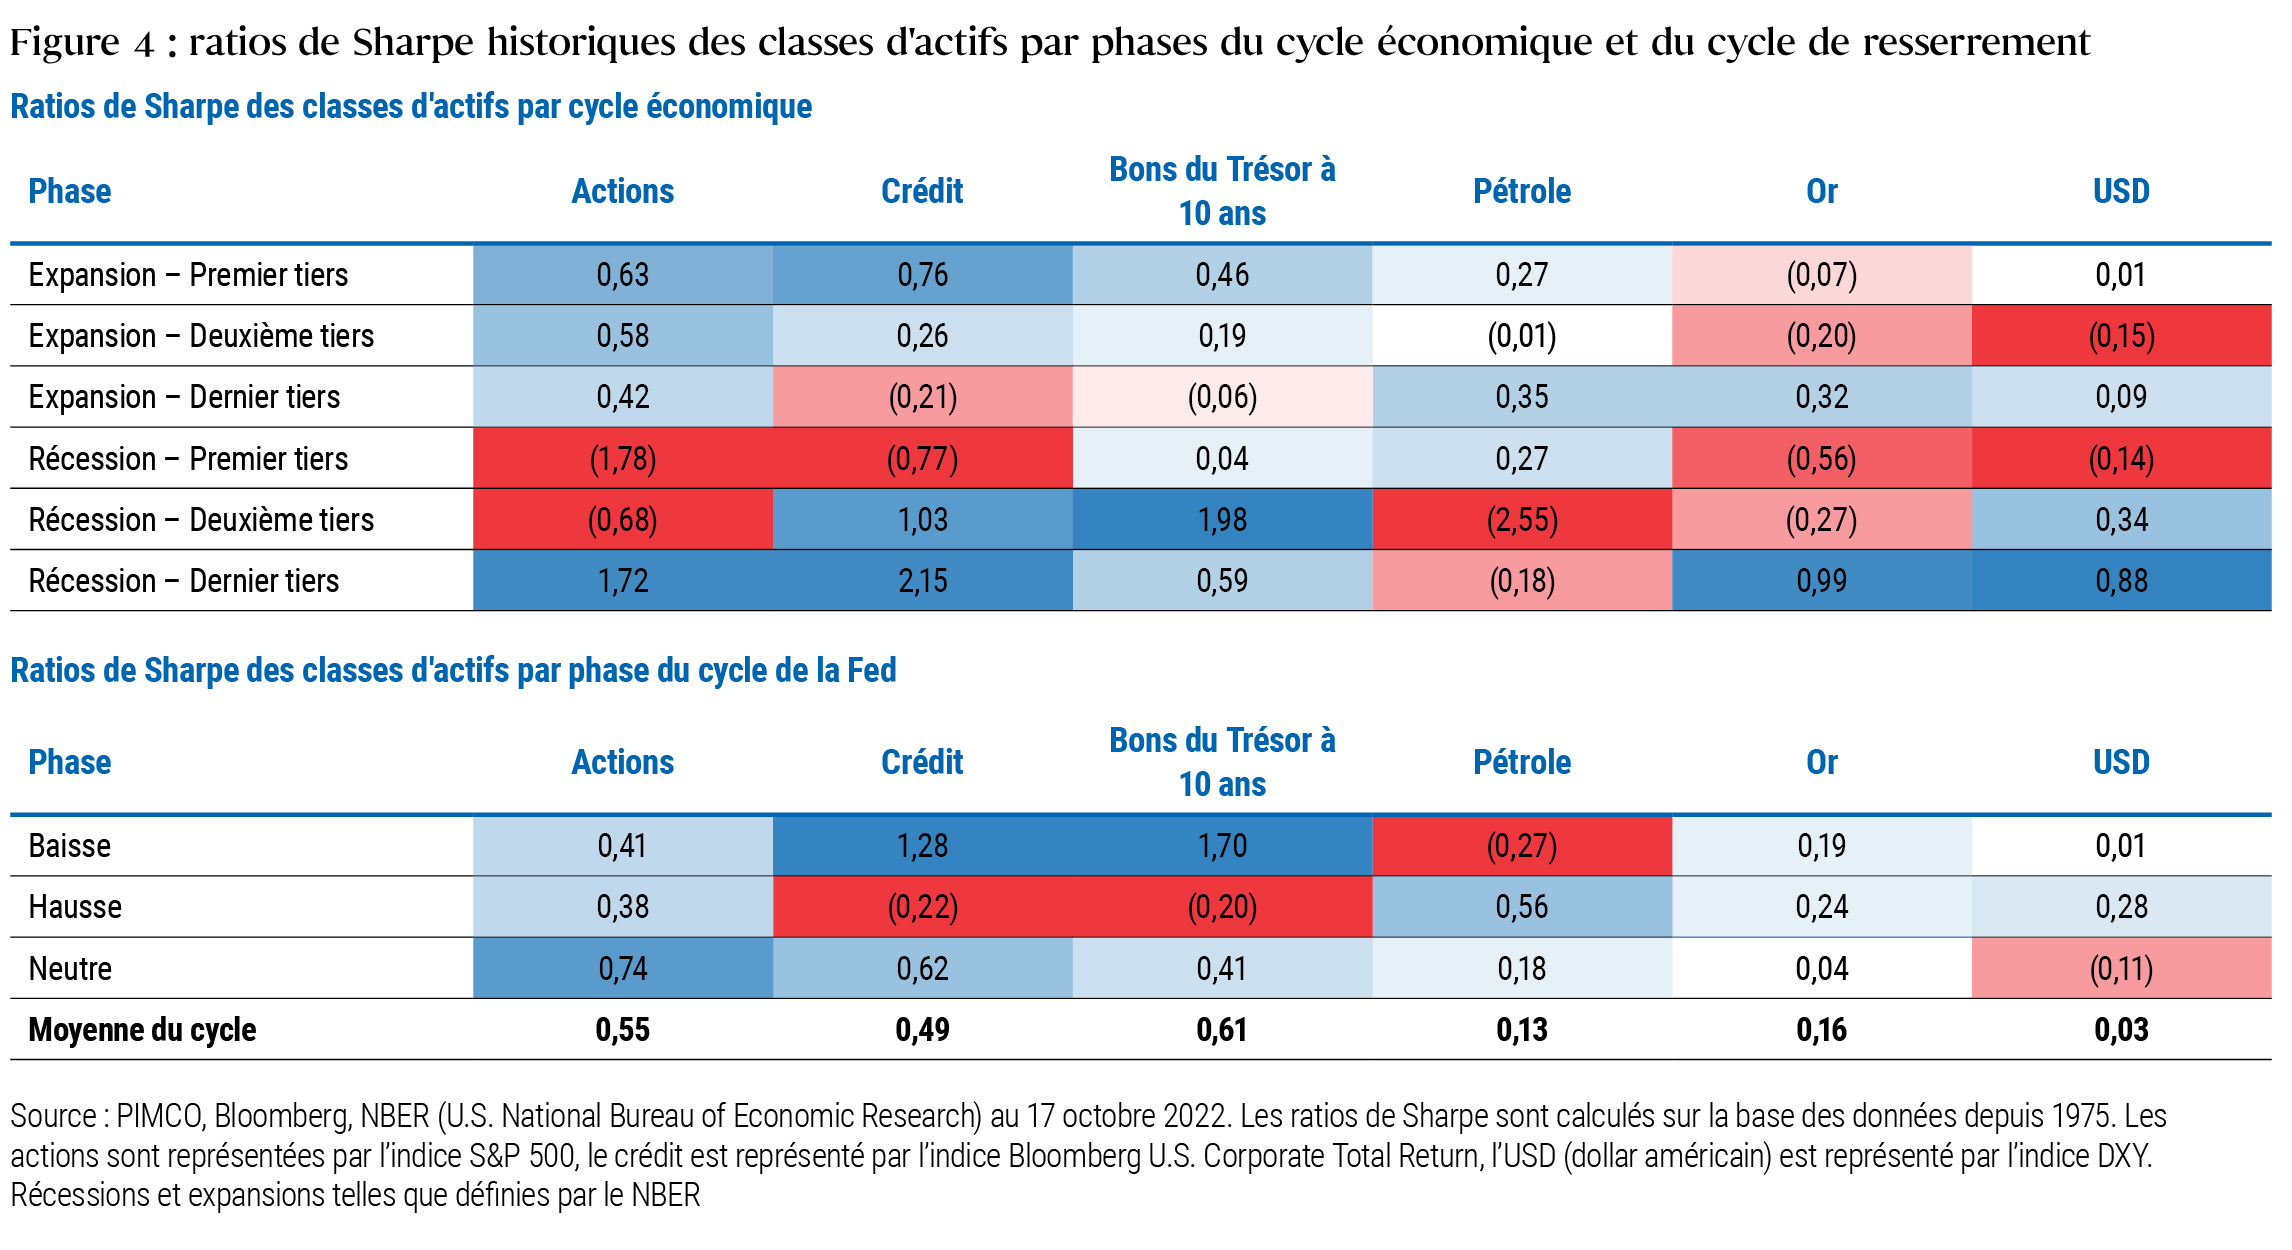 La Figure 4 comprend deux tableaux qui présentent les ratios de Sharpe, ou rendements ajustés du risque, historiques de différentes classes d’actifs tout au long du cycle économique (tableau du haut) et du cycle de taux de la Réserve fédérale (tableau du bas) depuis 1975. Les cellules en bleu plus foncé indiquent un rendement ajusté du risque plus élevé ou plus positif, tandis que celles en rouge plus foncé correspondent à un rendement ajusté du risque plus faible ou plus négatif dans un cycle donné. Dans le tableau des cycles économiques, le ratio de Sharpe le plus élevé (2,15) concerne les marchés du crédit dans le dernier tiers d’une récession, et le plus faible (-2,55) est celui des marchés pétroliers dans le tiers intermédiaire d’une récession. D’autres remarques et enseignements sont abordés dans le texte entourant la Figure 4.